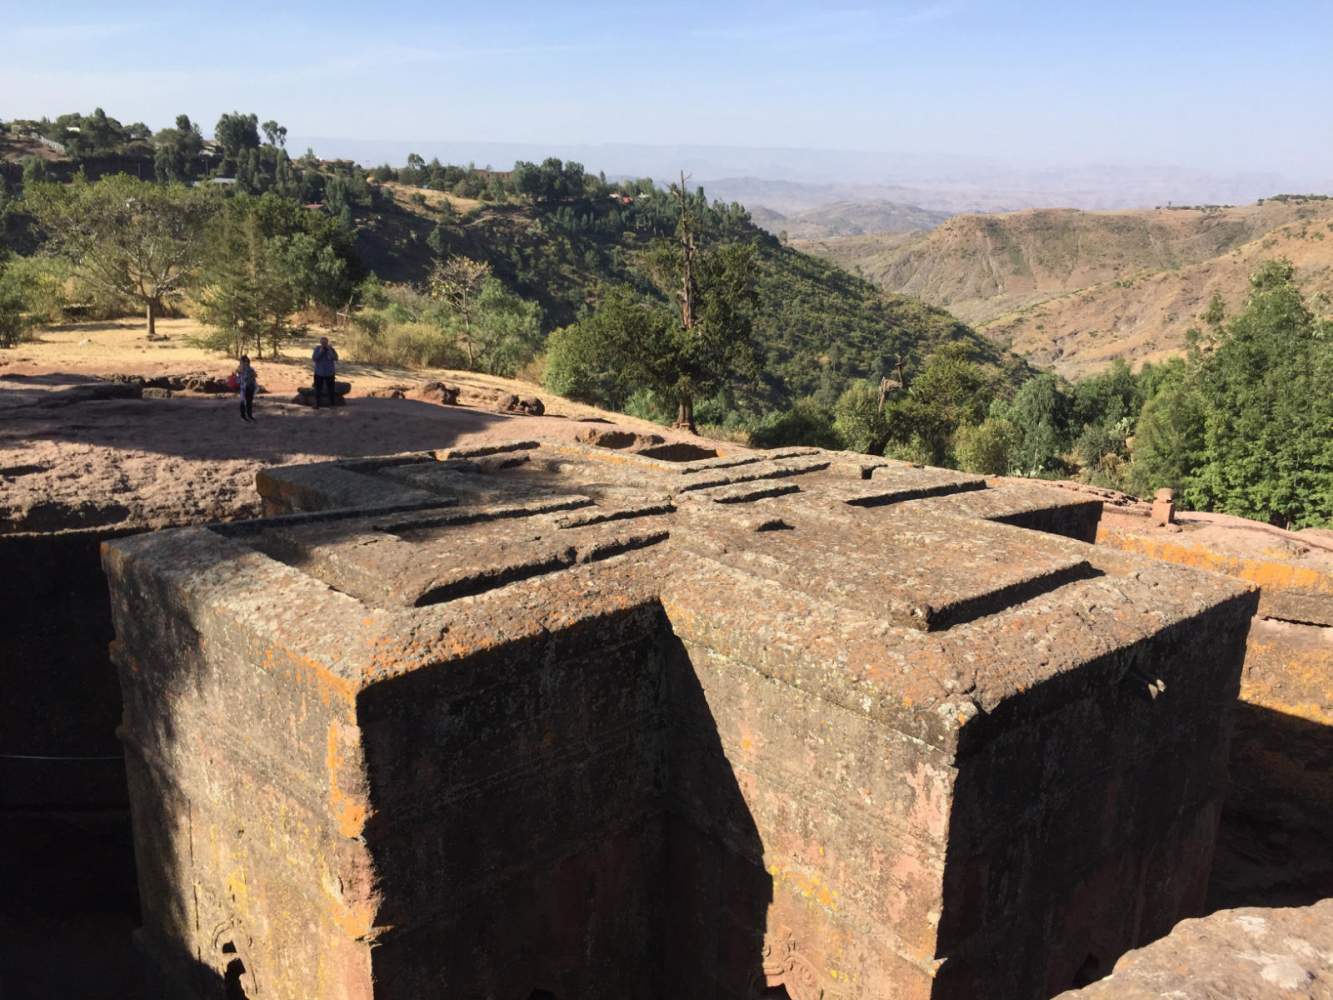 Unsere Motorradreise führt uns auch zu den berühmten Felsenkirchen in Lalibela, Äthiopien